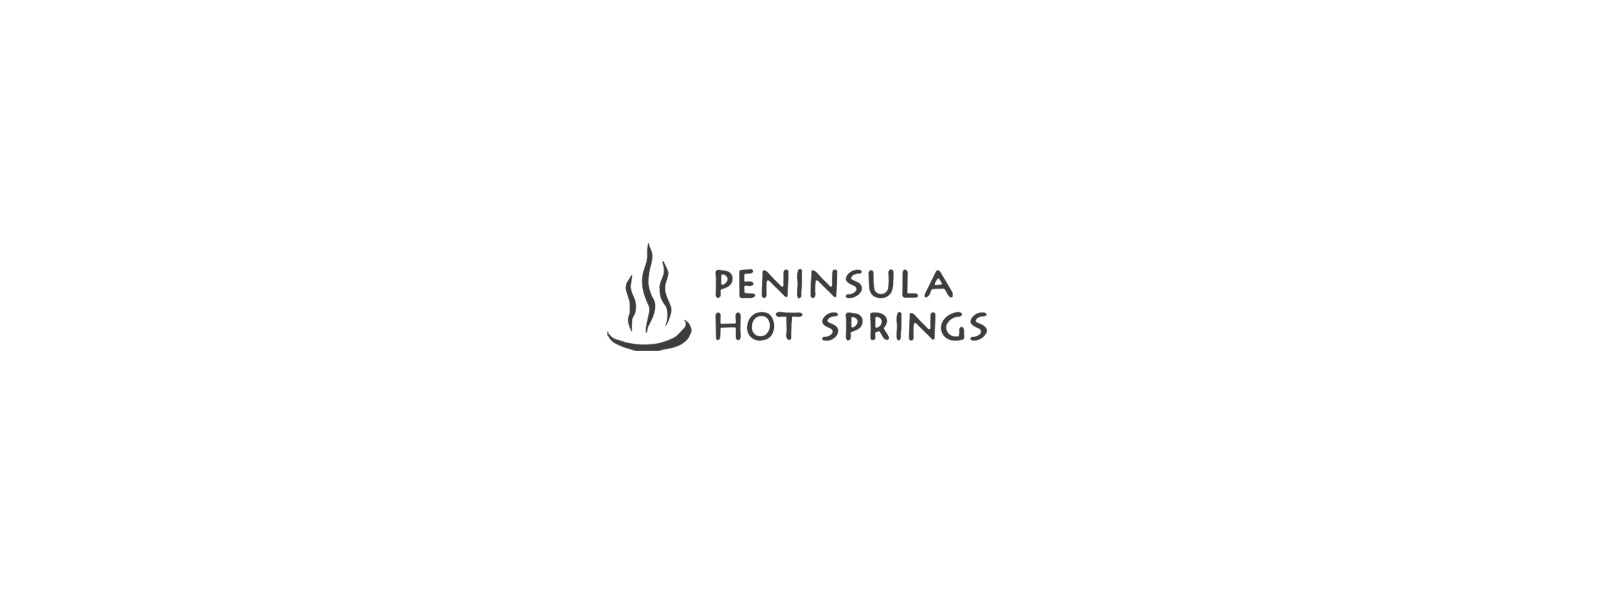 Peninsula Hot Springs Partnership